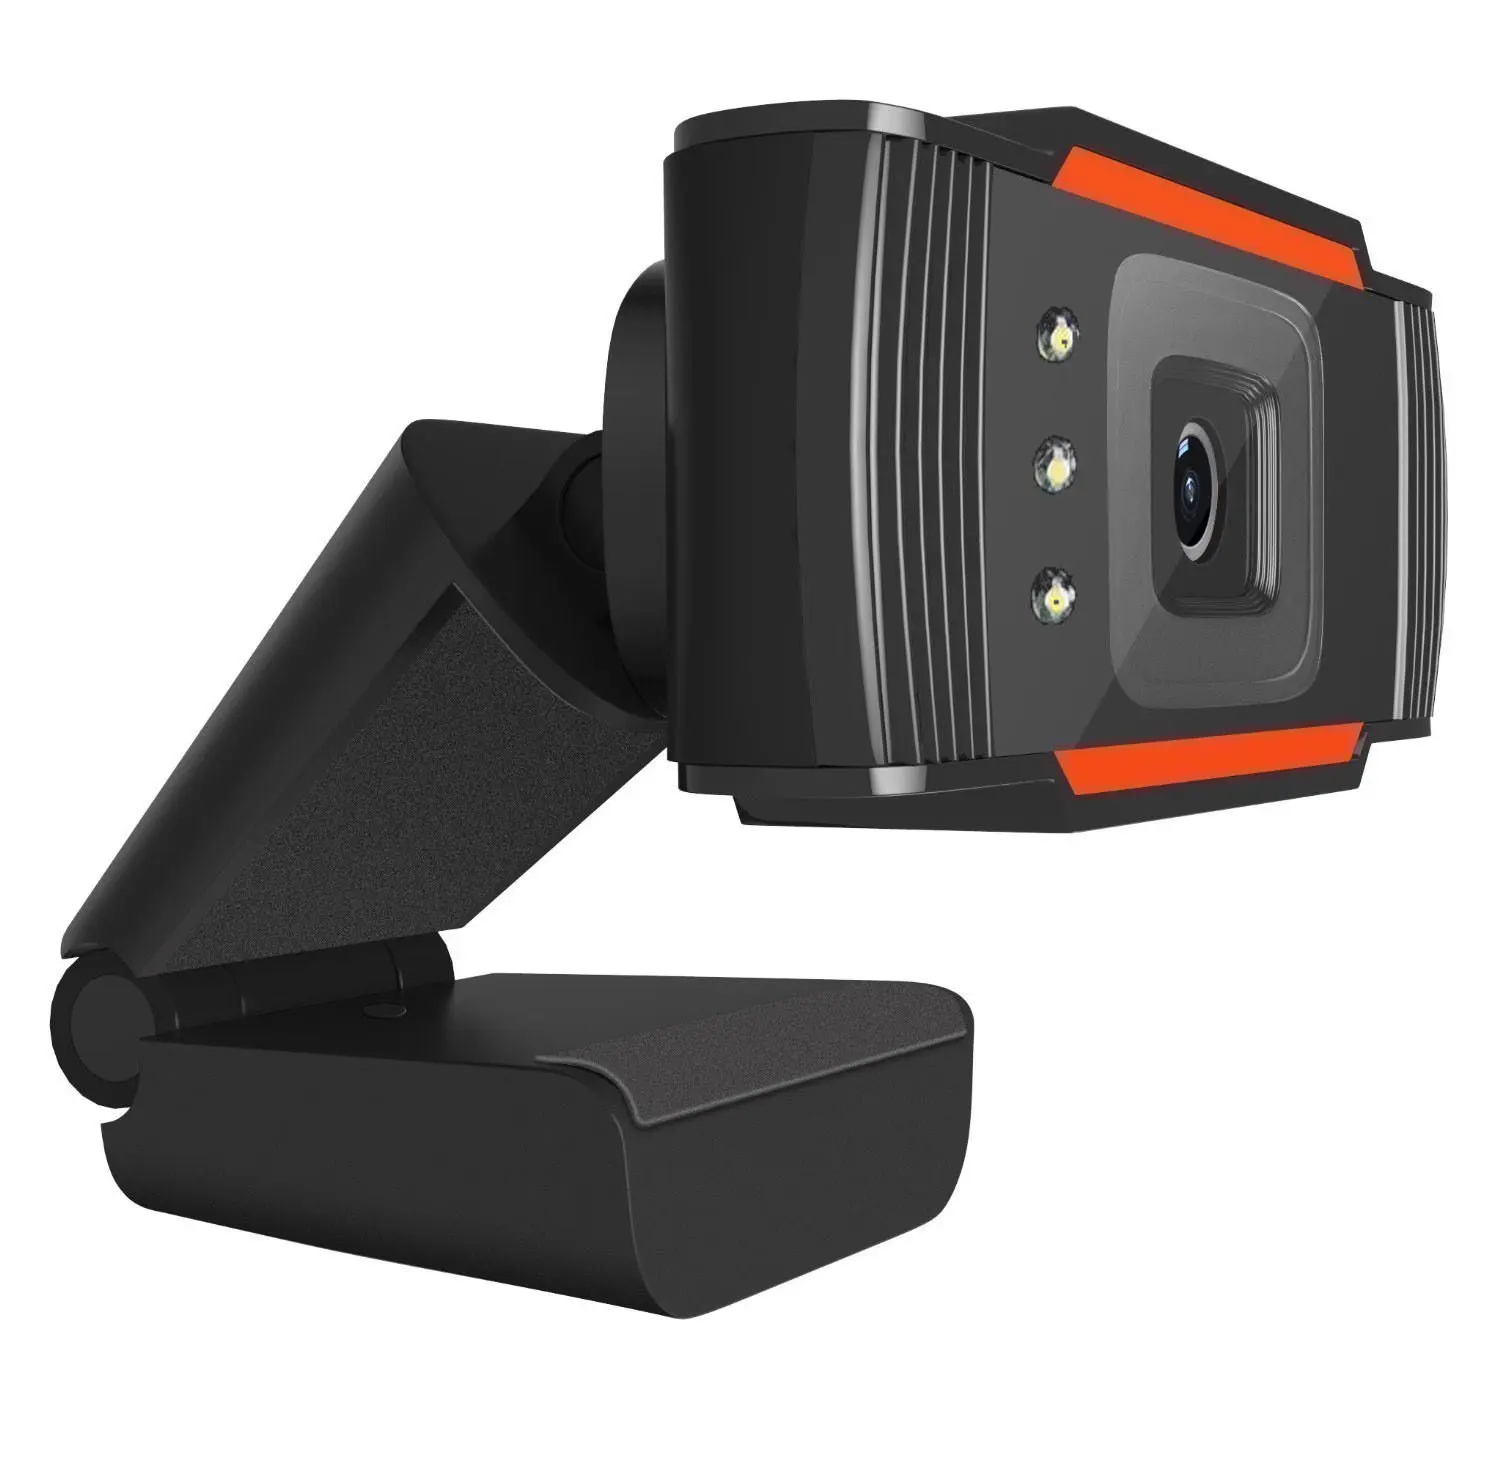 Web camera cam 480p 720p 1080p full hd 1920 live streaming videocamere per videoconferenze per pc laptop videocamere web webcam